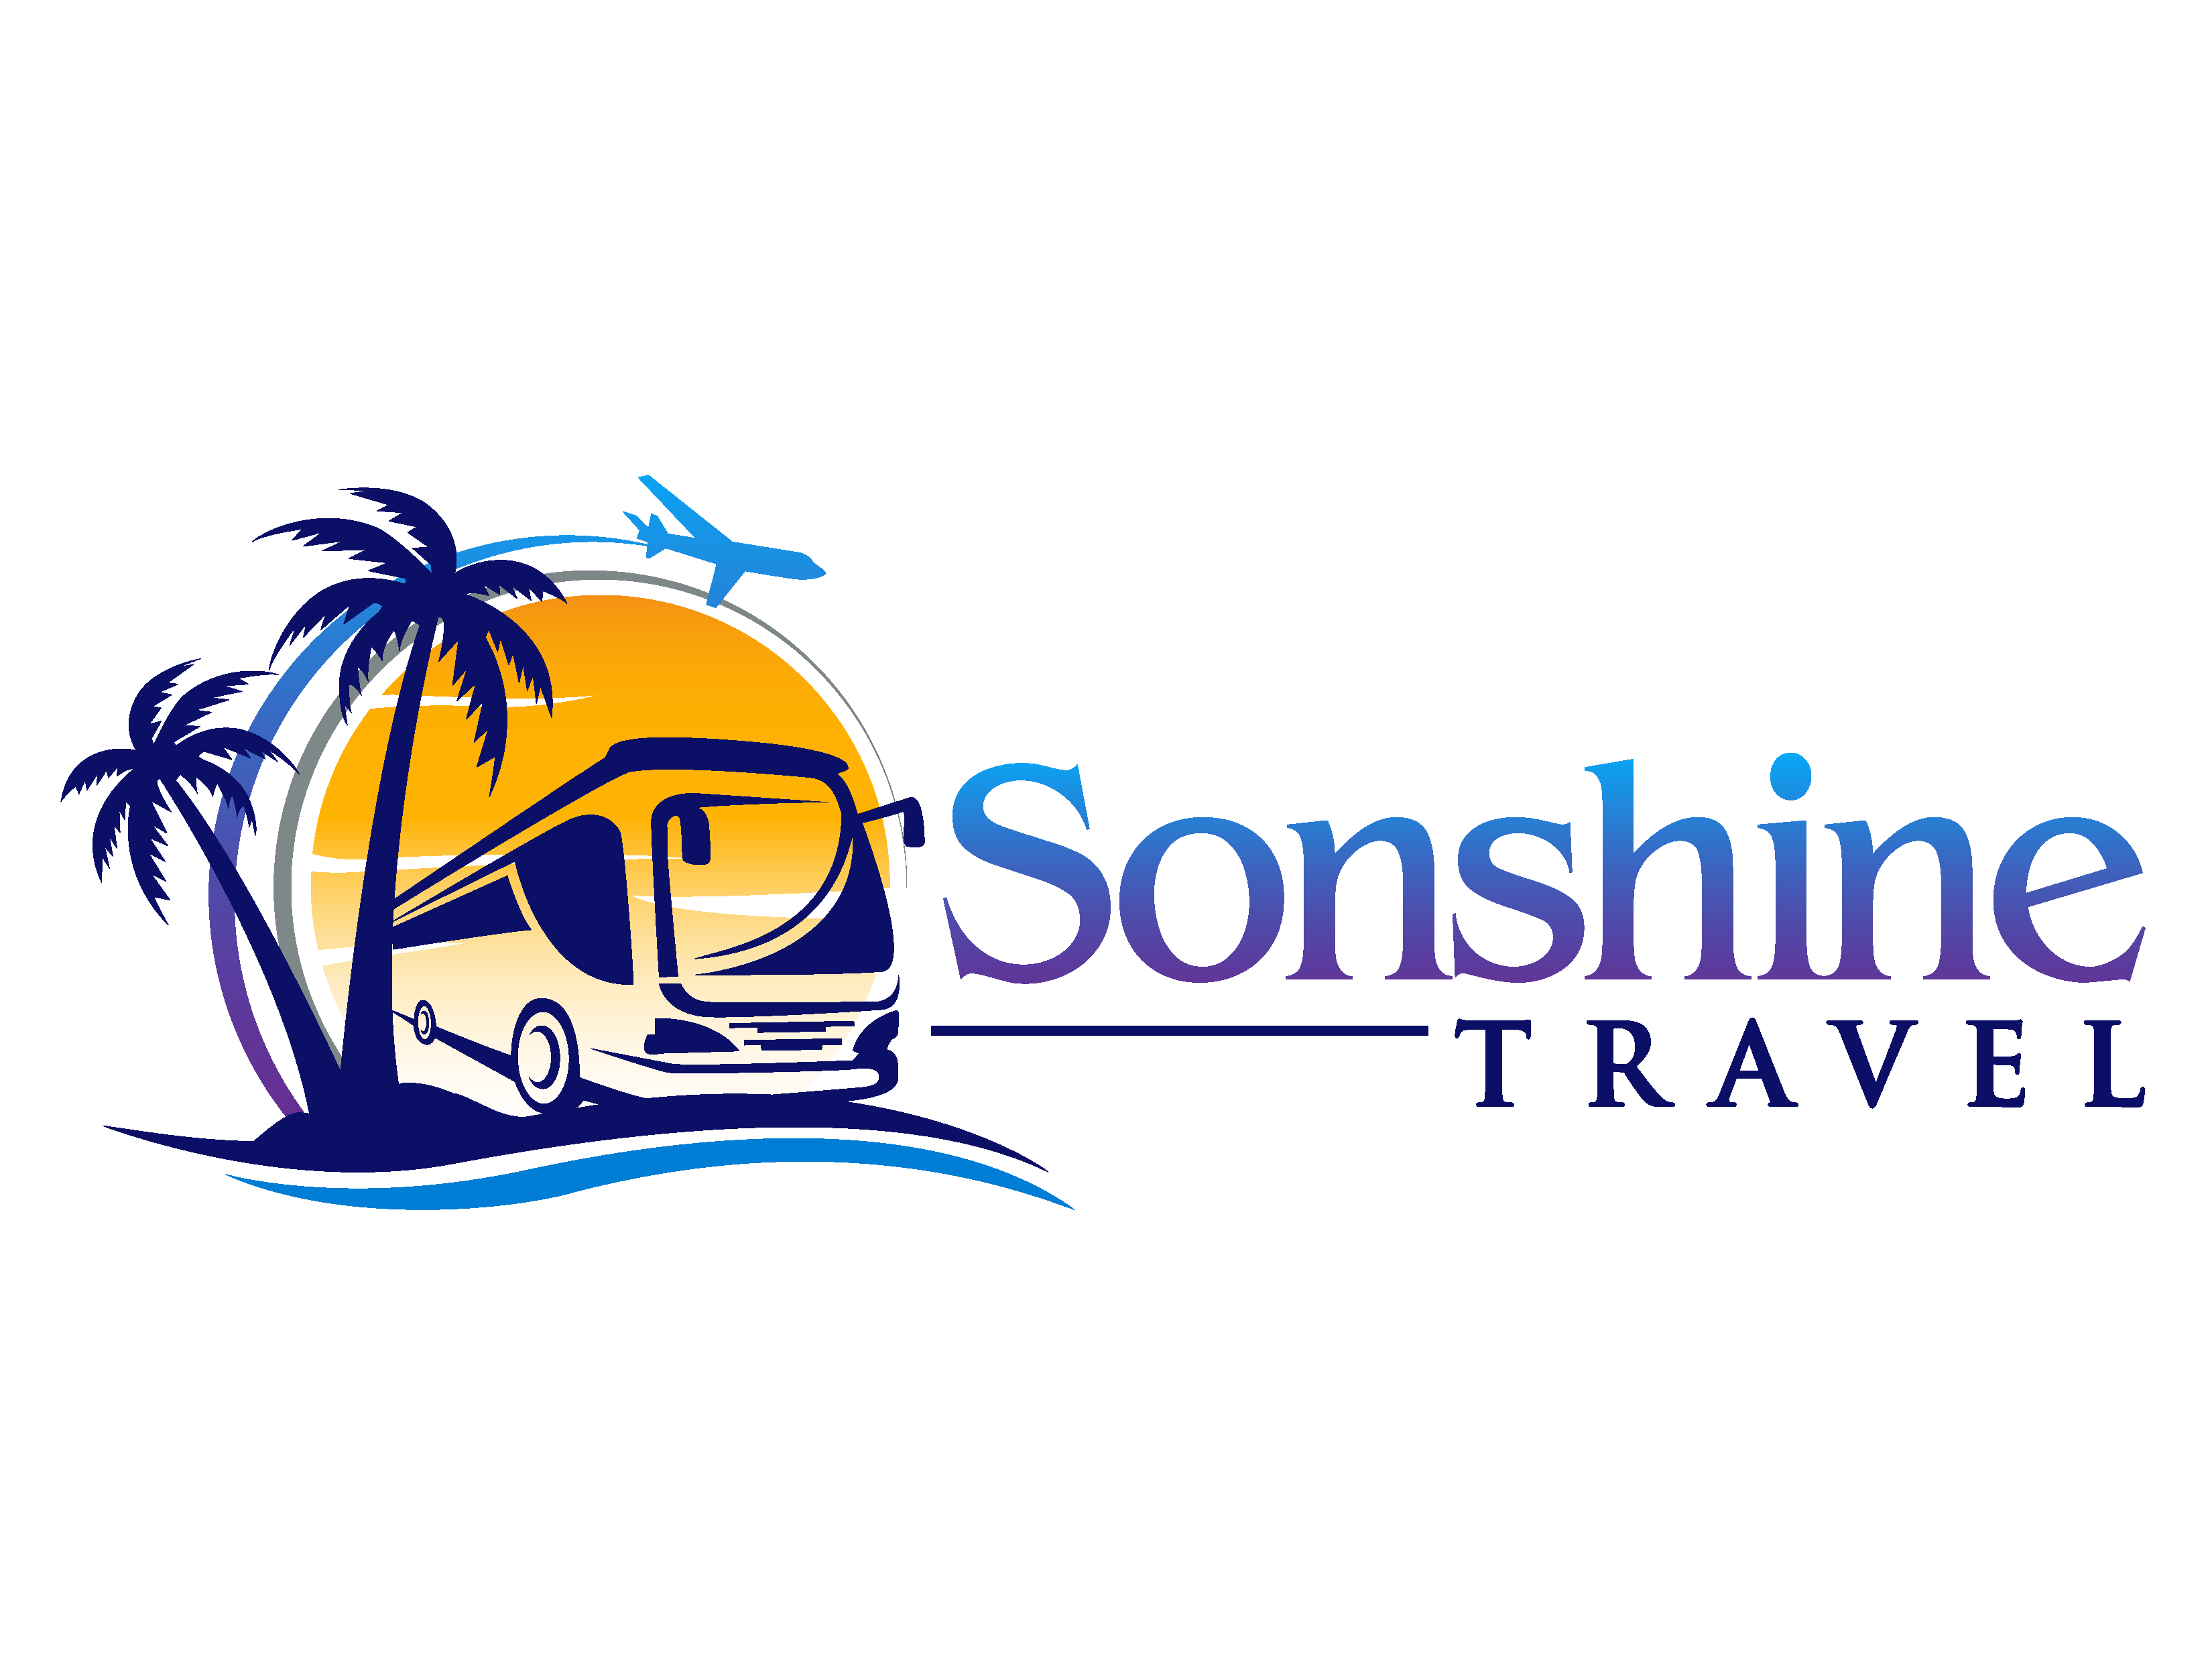 Sonshine Travel Pty Ltd